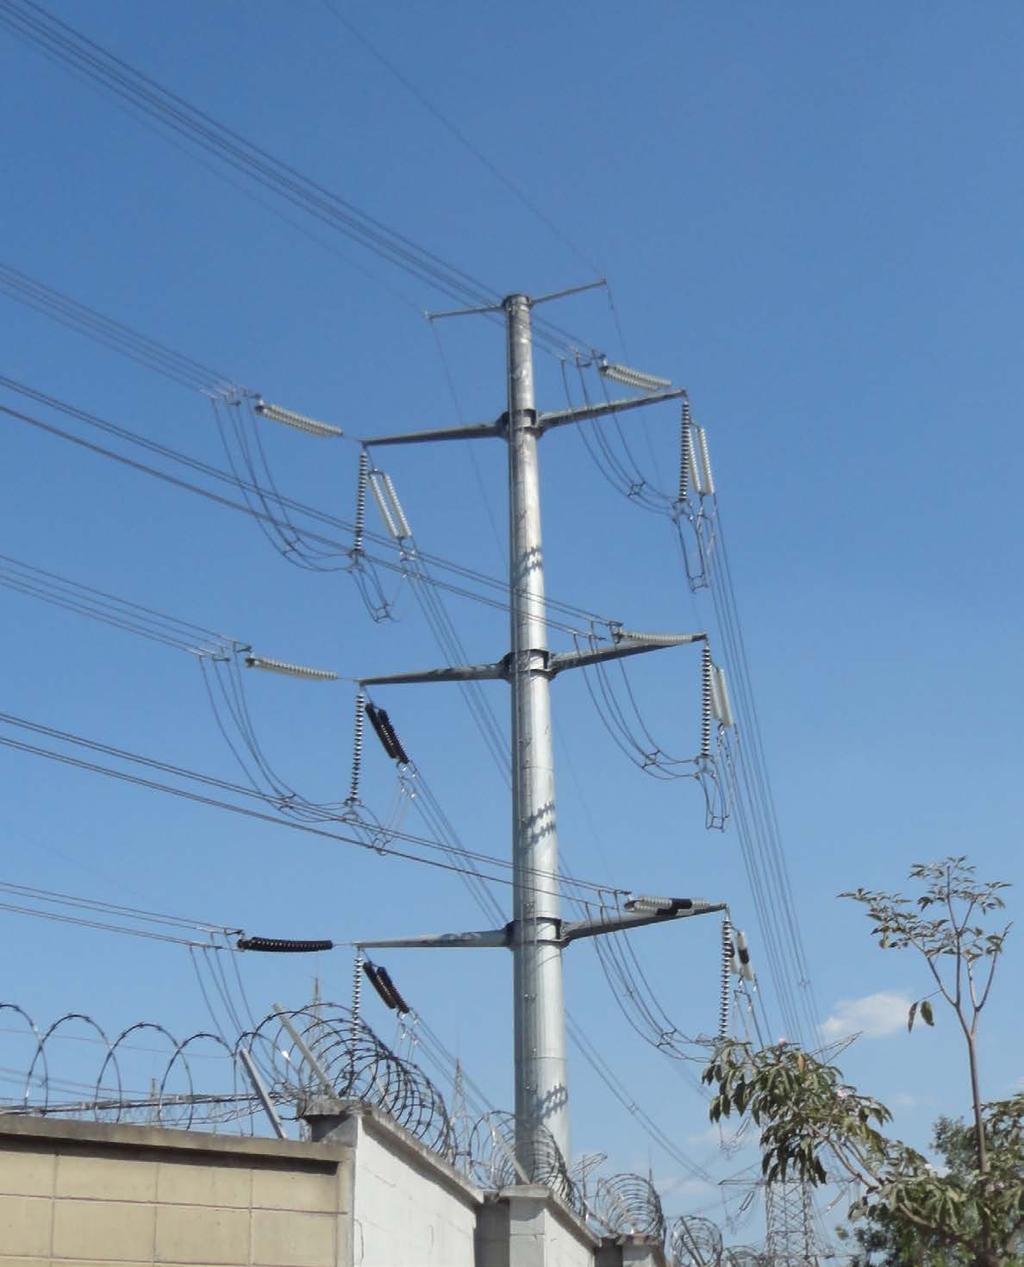 SE XAVANTES - 345 kv ISA - CTEEP São Paulo - SP Torre Monotubular em ancoragem em 345 kv, de circuito duplo com quatro cabos 954